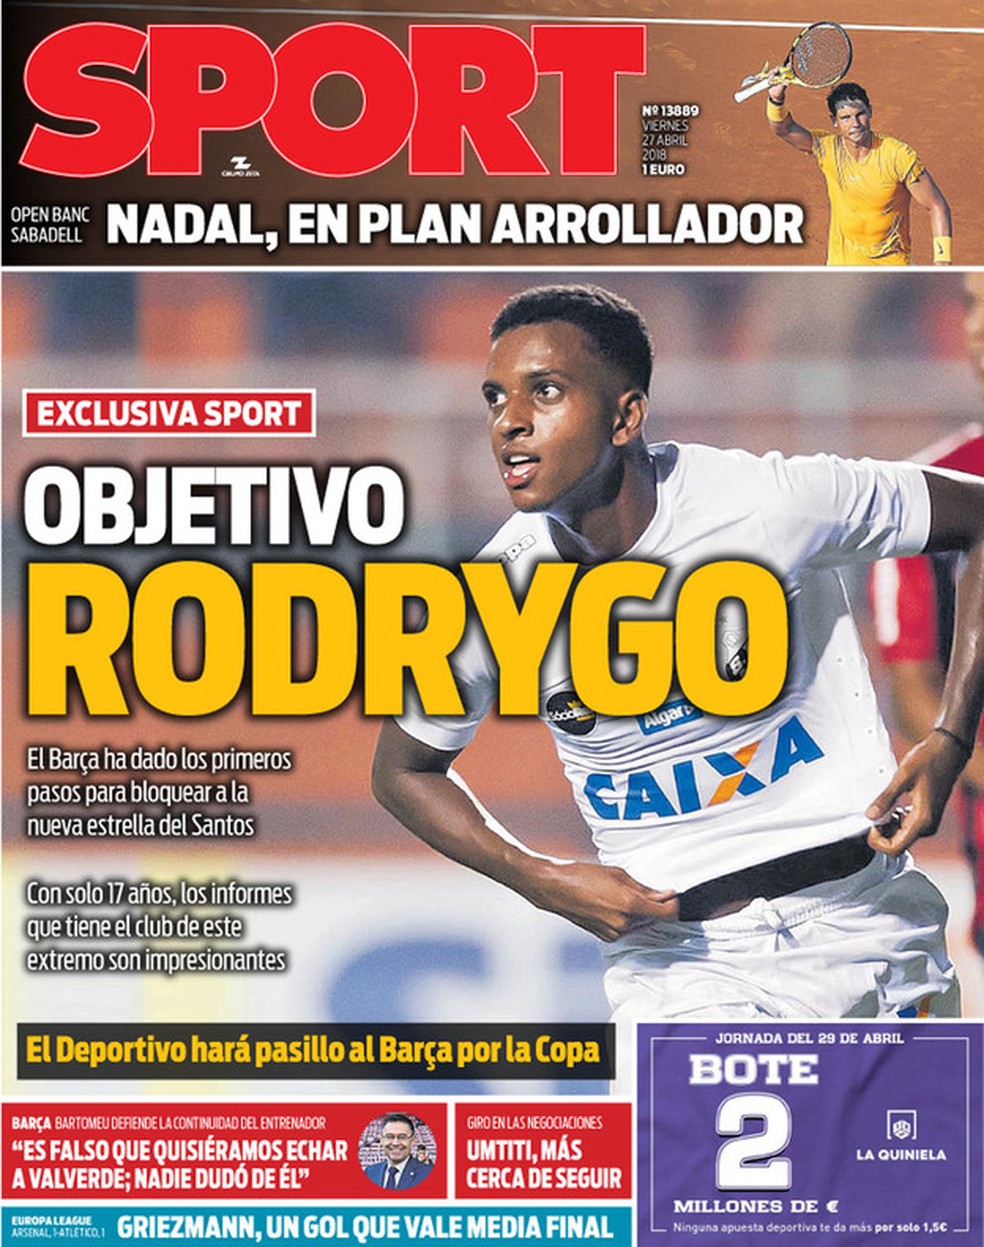 Capa do jornal Sport, da Cataunha, coloca Rodrygo como objetivo do Barcelona (Foto: Divulgação/Sport)